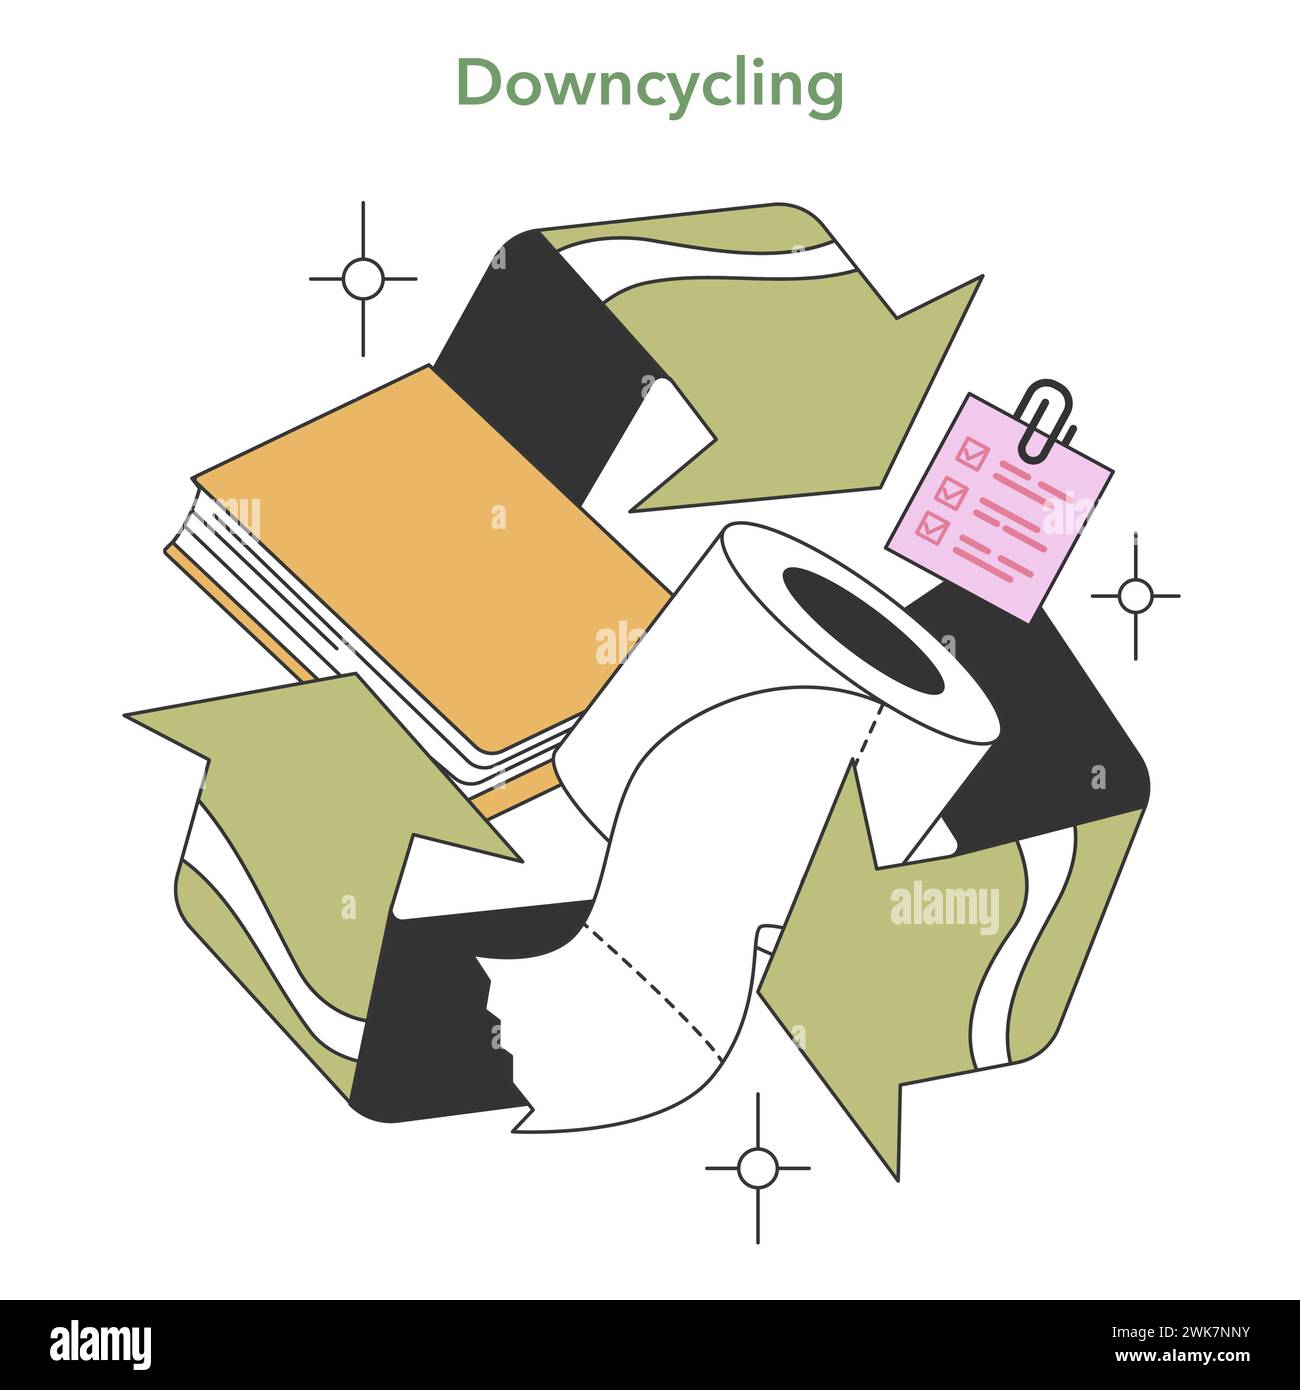 Darstellung des Downcycling-Prozesses. Recycelbare Materialien wie Papier und Papiertücher, die eine geringere Qualität des Recyclings darstellen. Illustration des flachen Vektors Stock Vektor